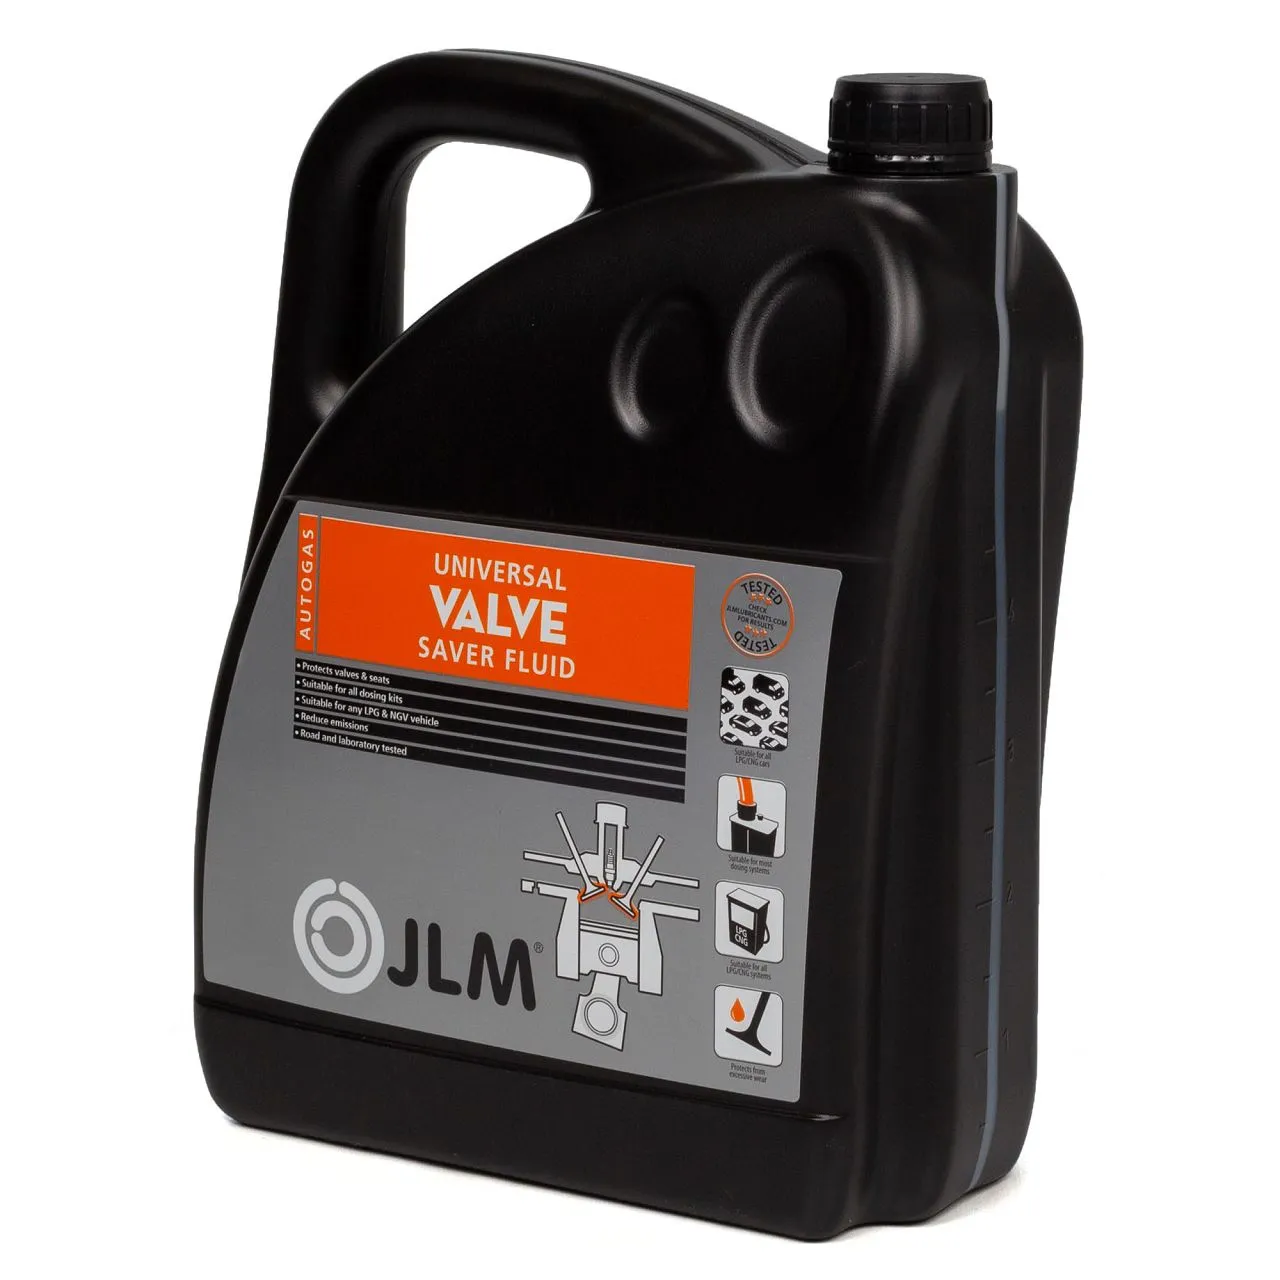 5L JLM Valve Saver Fluid 5 Liter 8718274350258 LPG Kleppen reiniger / beschermer